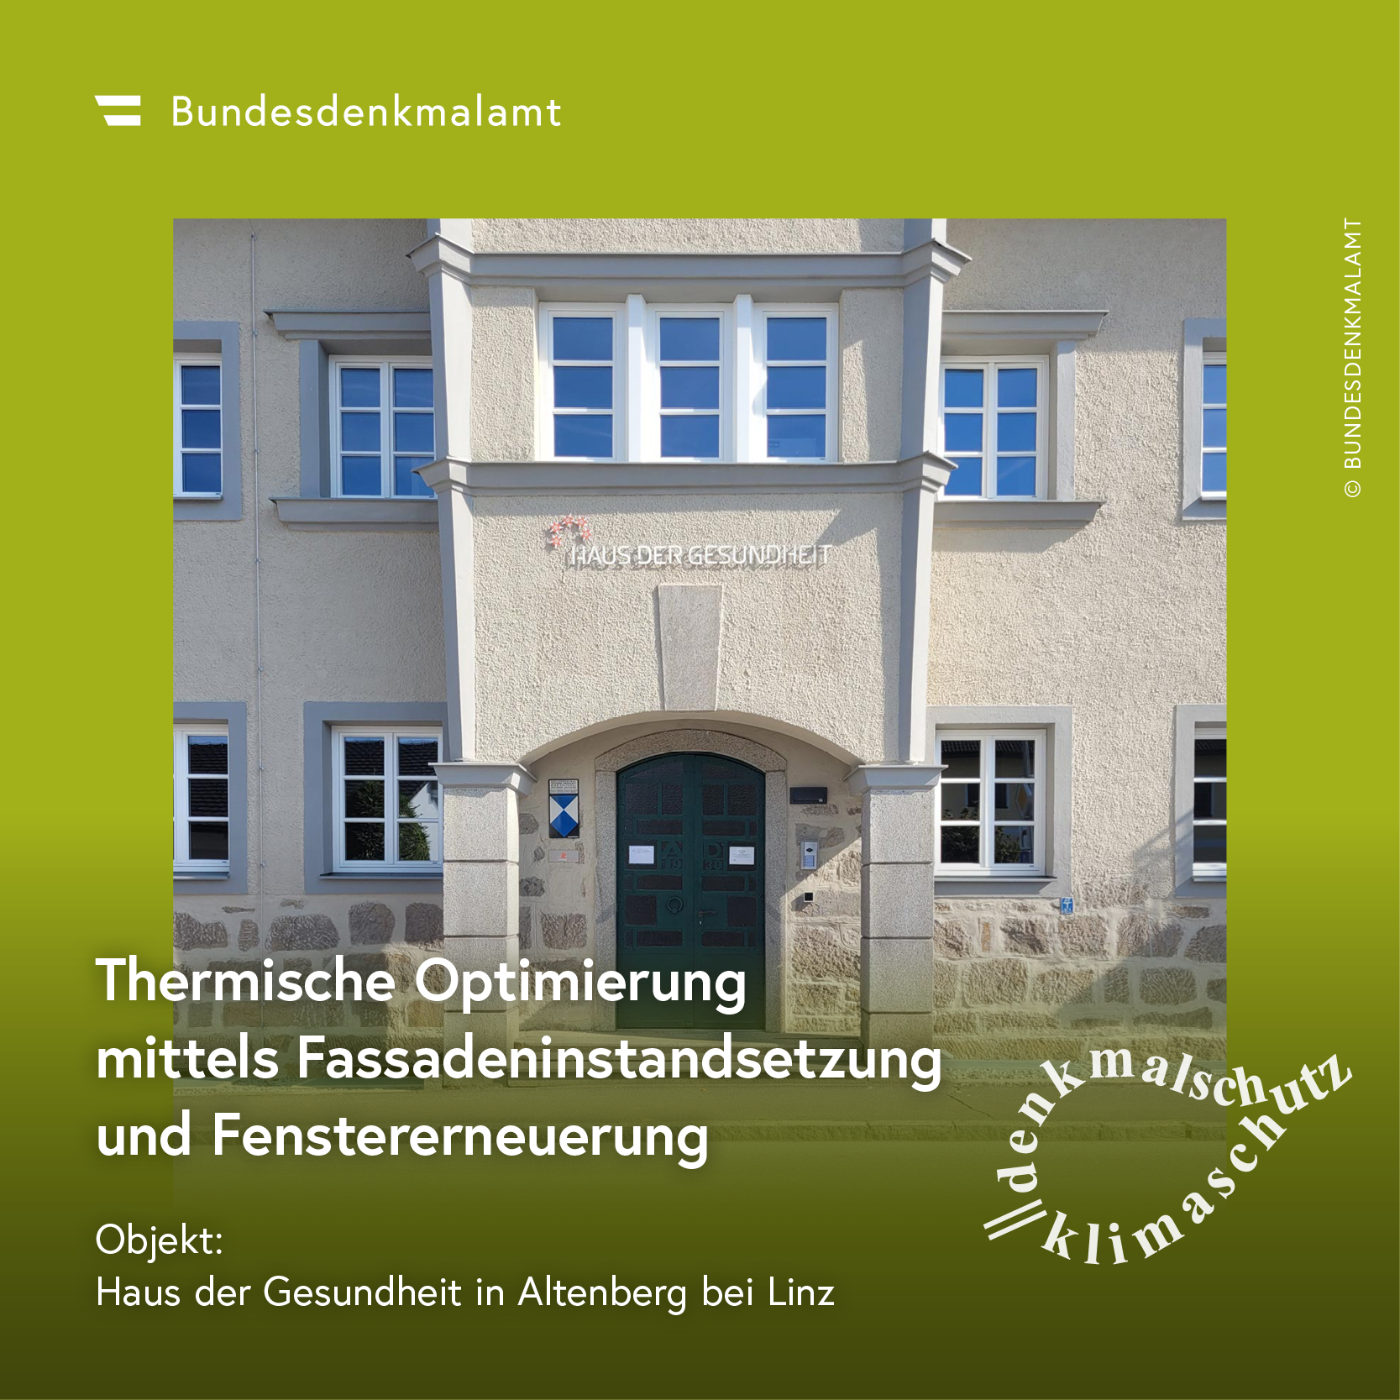 Sujet der Kampagne "Denkmalschutz ist Klimaschutz" - Haus der Gesundheit in Altenberg bei Linz